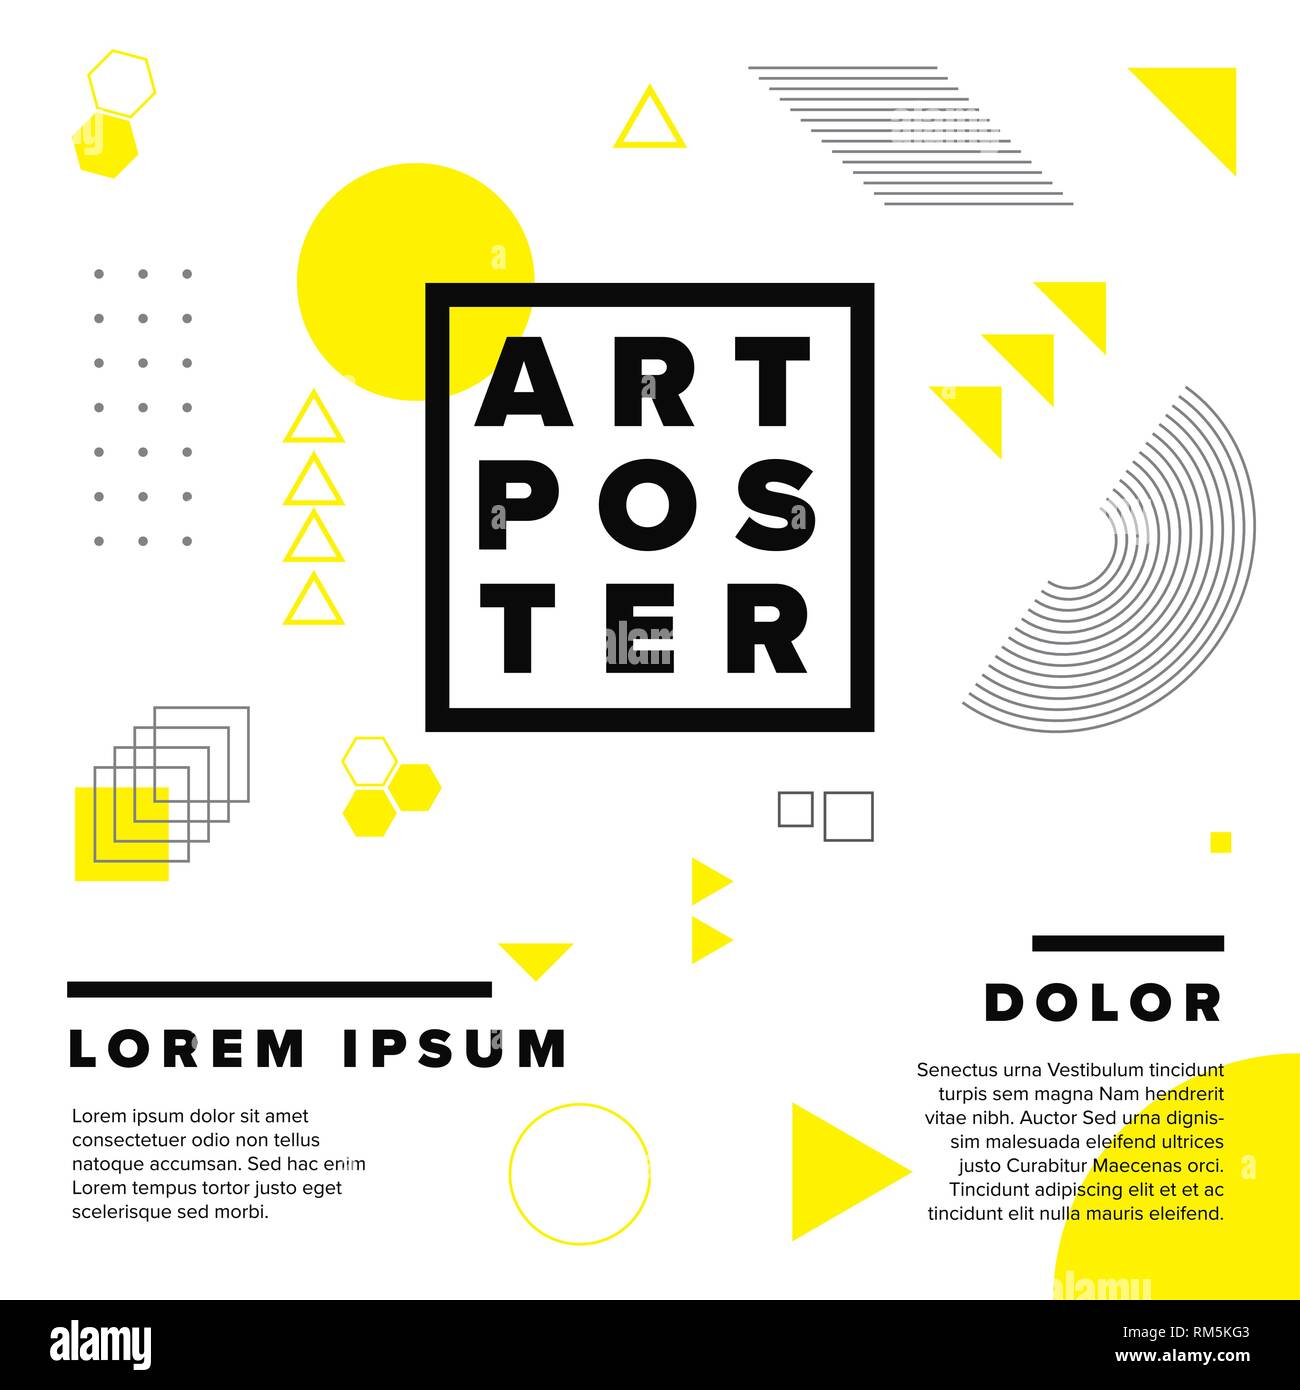 El arte moderna de geometría vectorial poster plantilla para la exposición de arte, galería, concierto o fiesta de baile - versión en negro y amarillo Ilustración del Vector